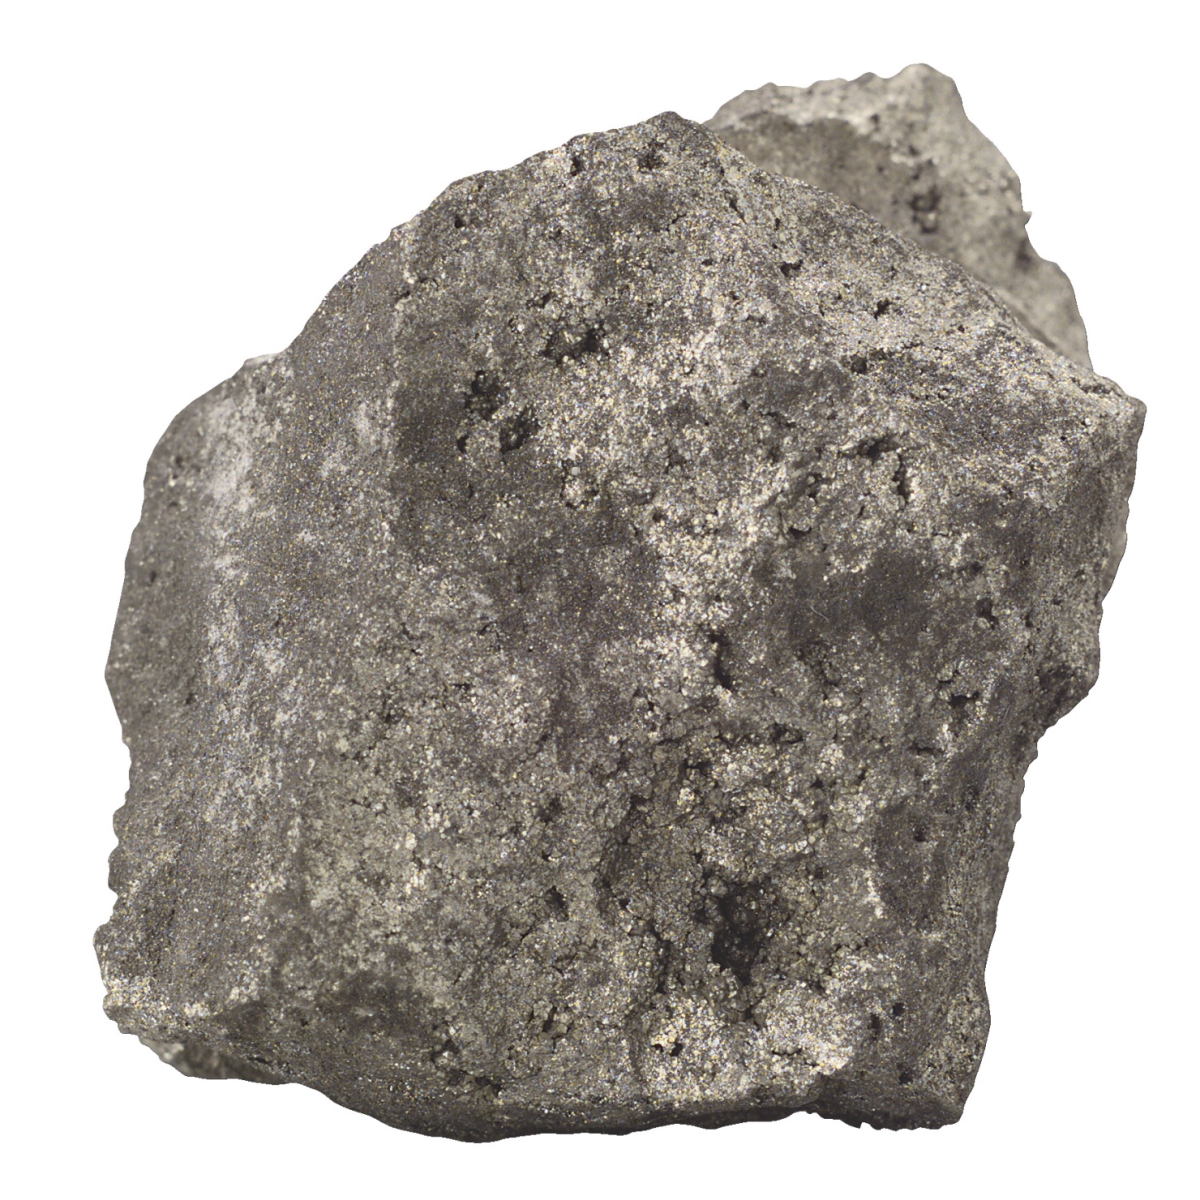 587281 Student Scott Resources Massive Pyrite - Some Quartz - Pack Of 10